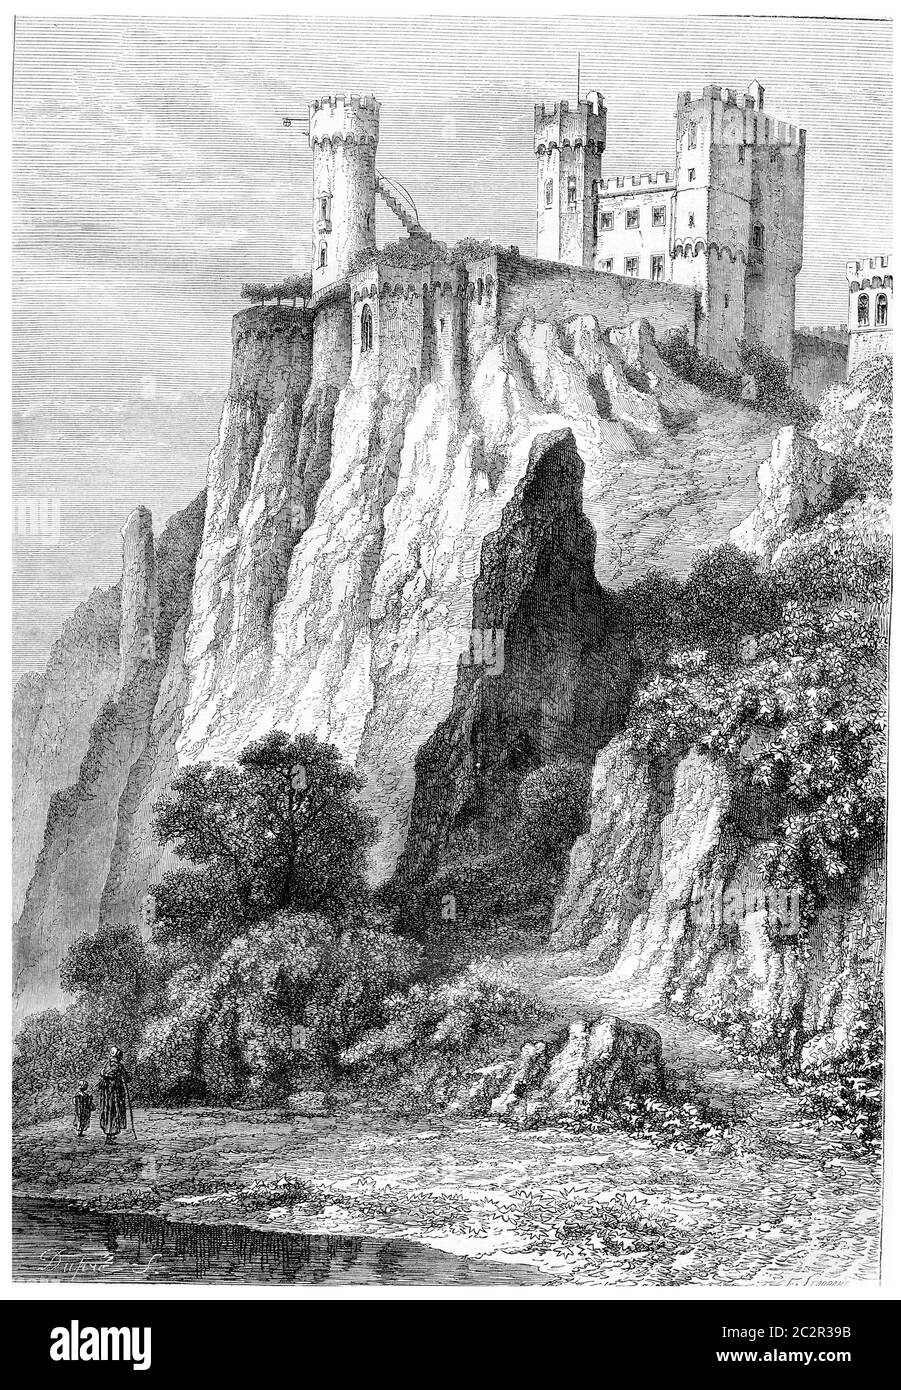 Château de Rheinstein en Rhénanie-Palatinat, Allemagne, au-dessus des rives du Rhin, illustration gravée d'époque. Magasin Pittoresque - 186 Banque D'Images